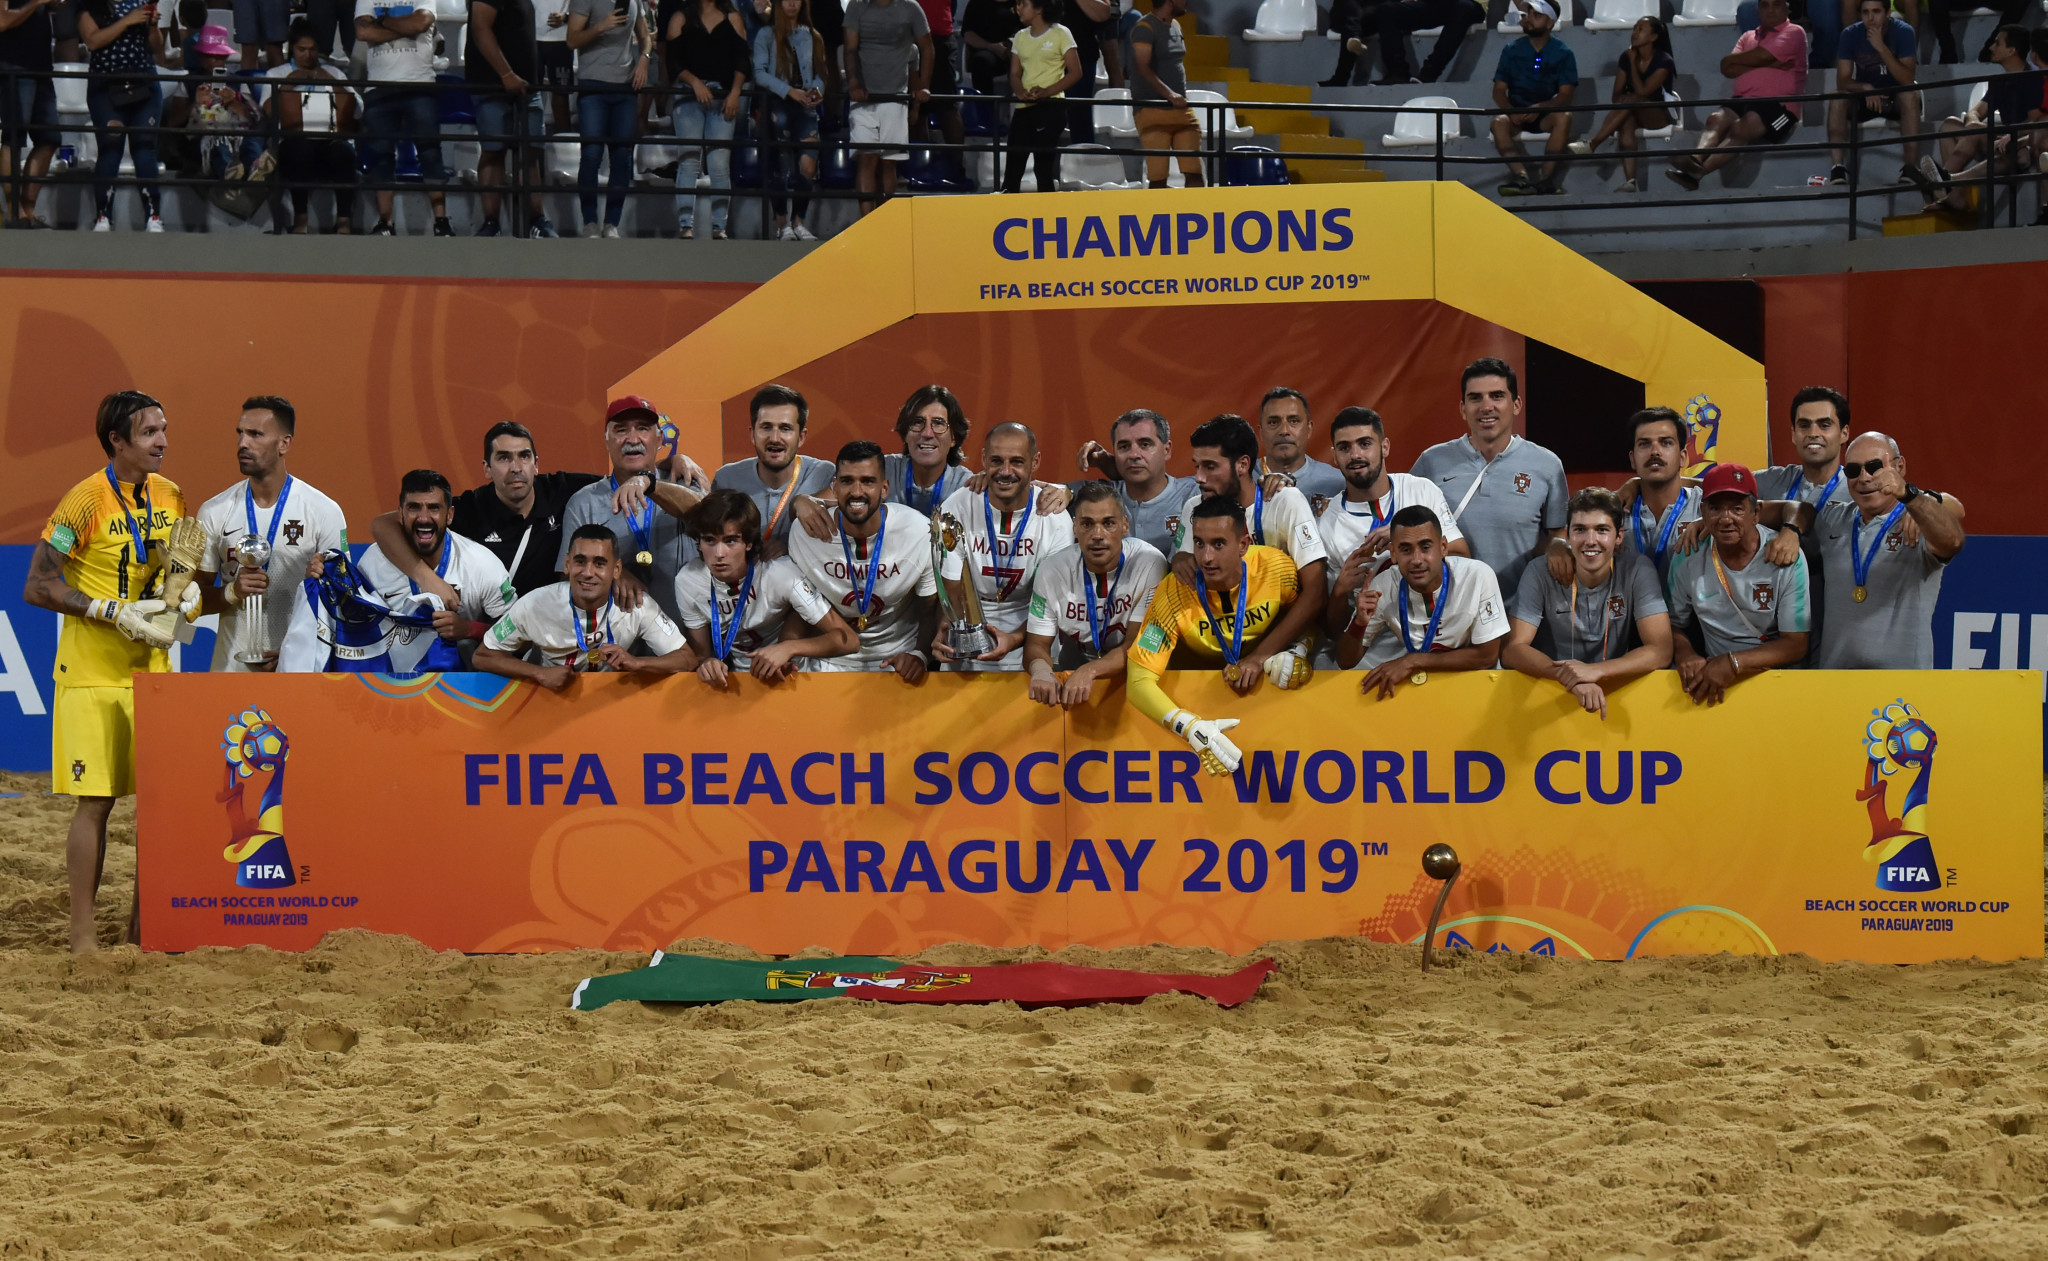 Portugal venceu a Copa do Mundo de Beach Soccer da FIFA 2019 no Paraguai © Getty Images